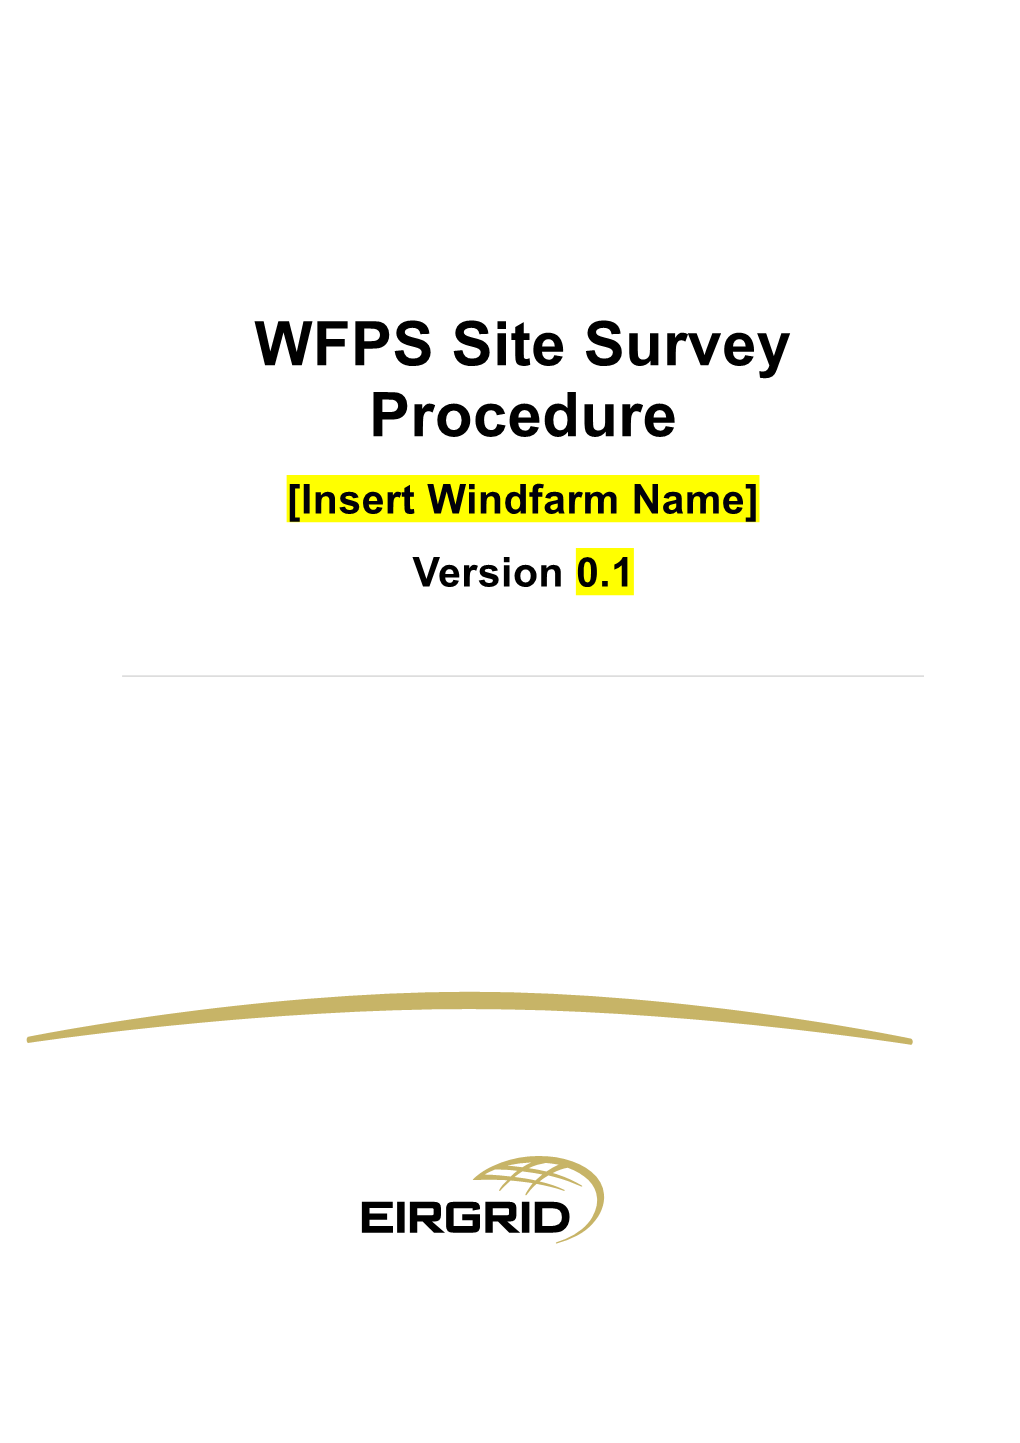 WFPS Site Survey Procedure